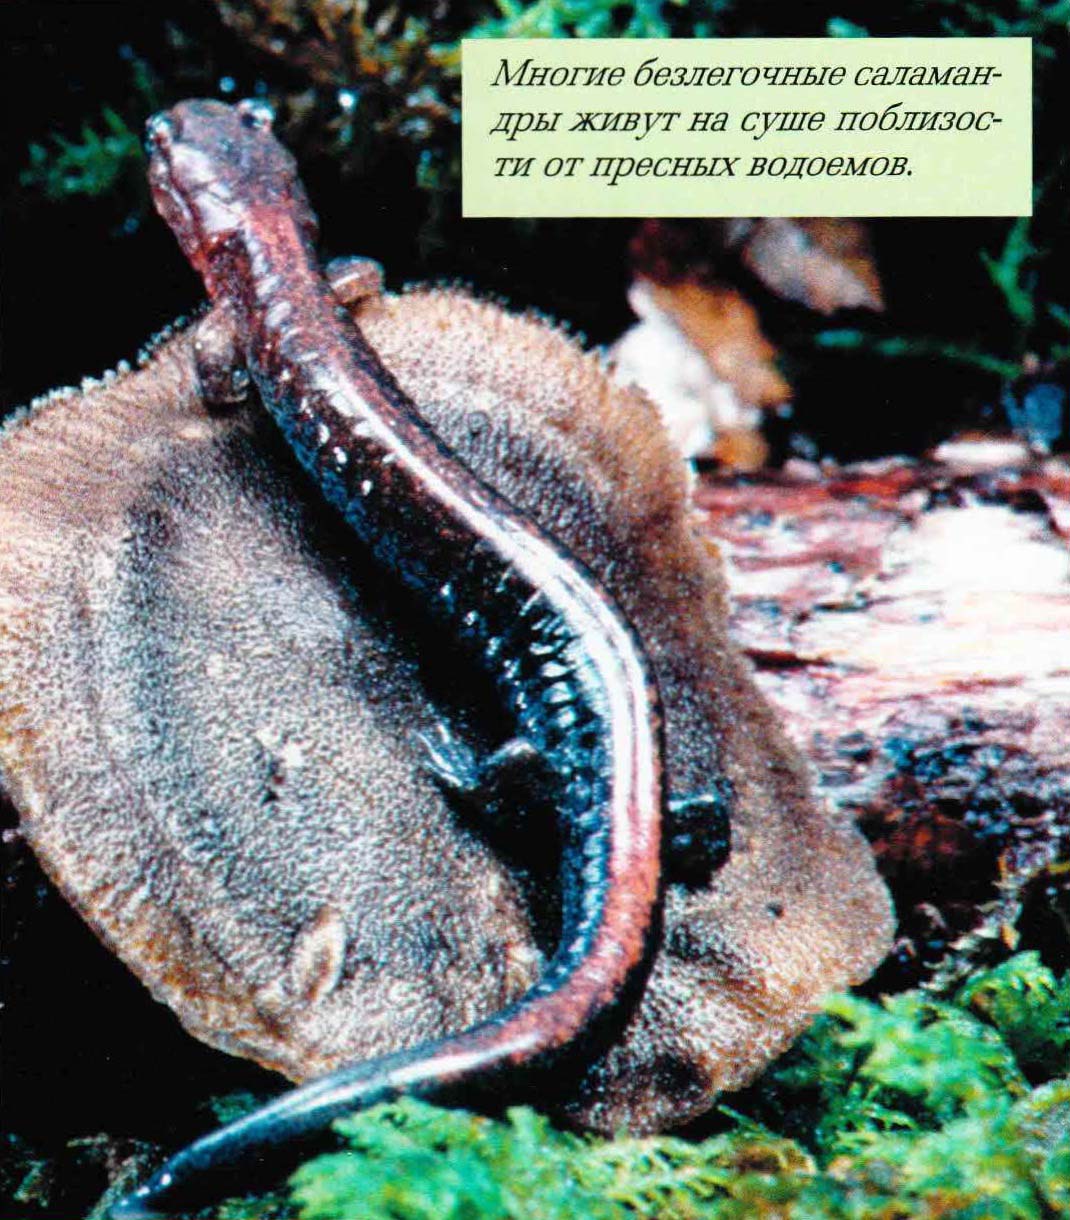 Многие безлегочные саламандры живут на суше поблизости от пресных водоемов.